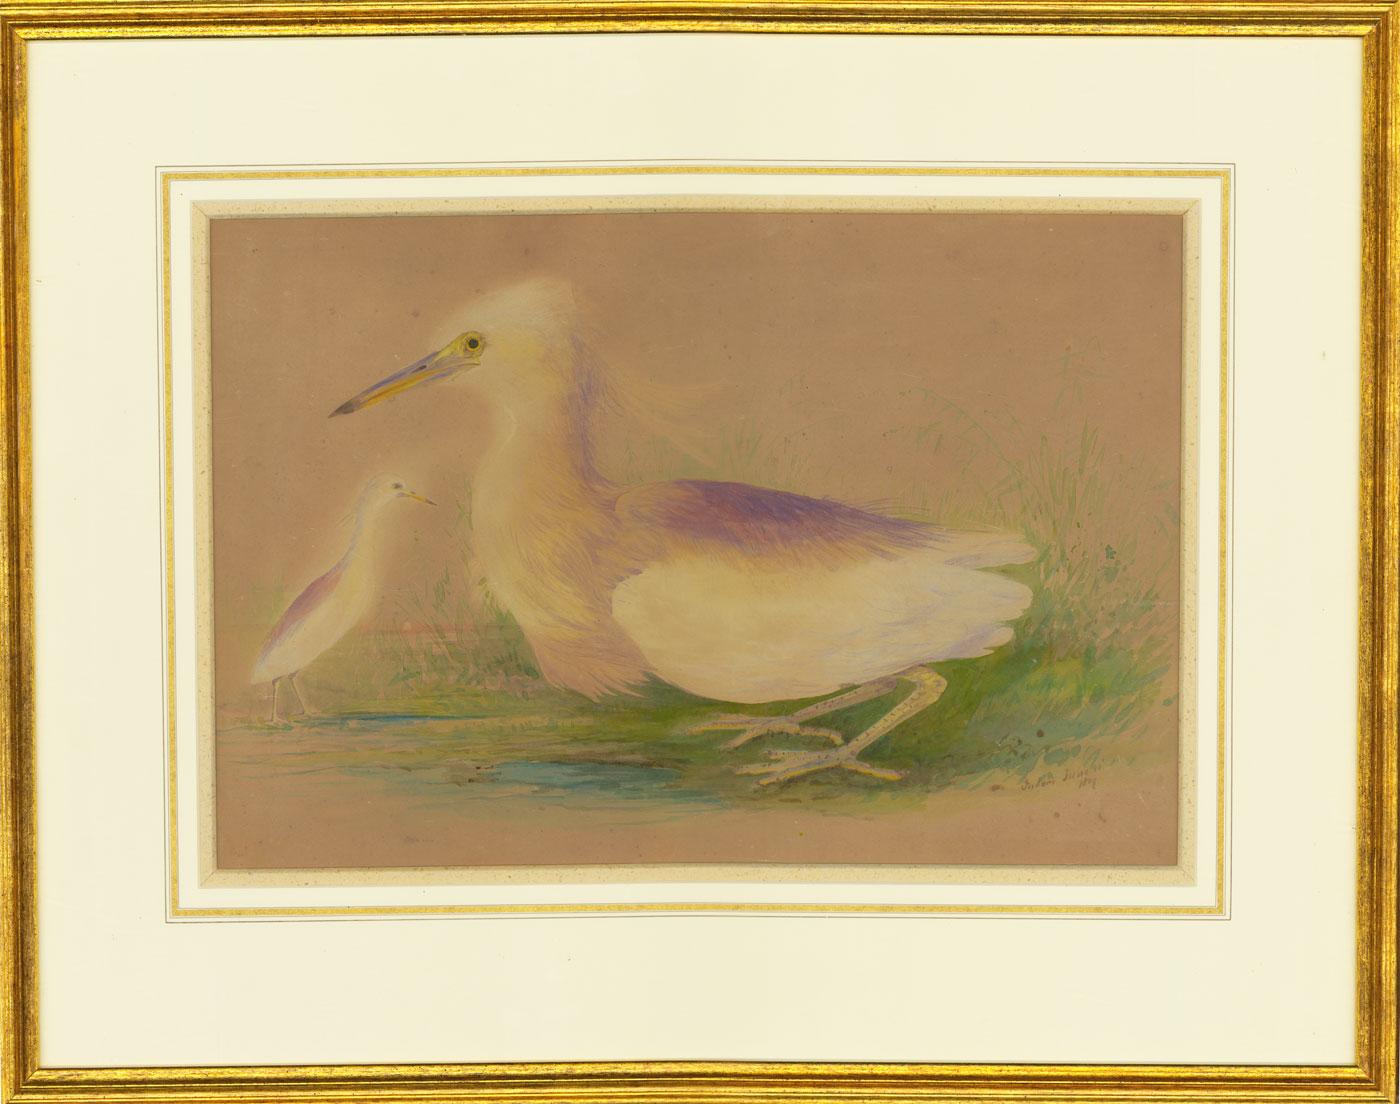 Unknown Animal Art – Gerahmtes Aquarell von 1809 - Eine Studie von zwei schneeligen Egrets